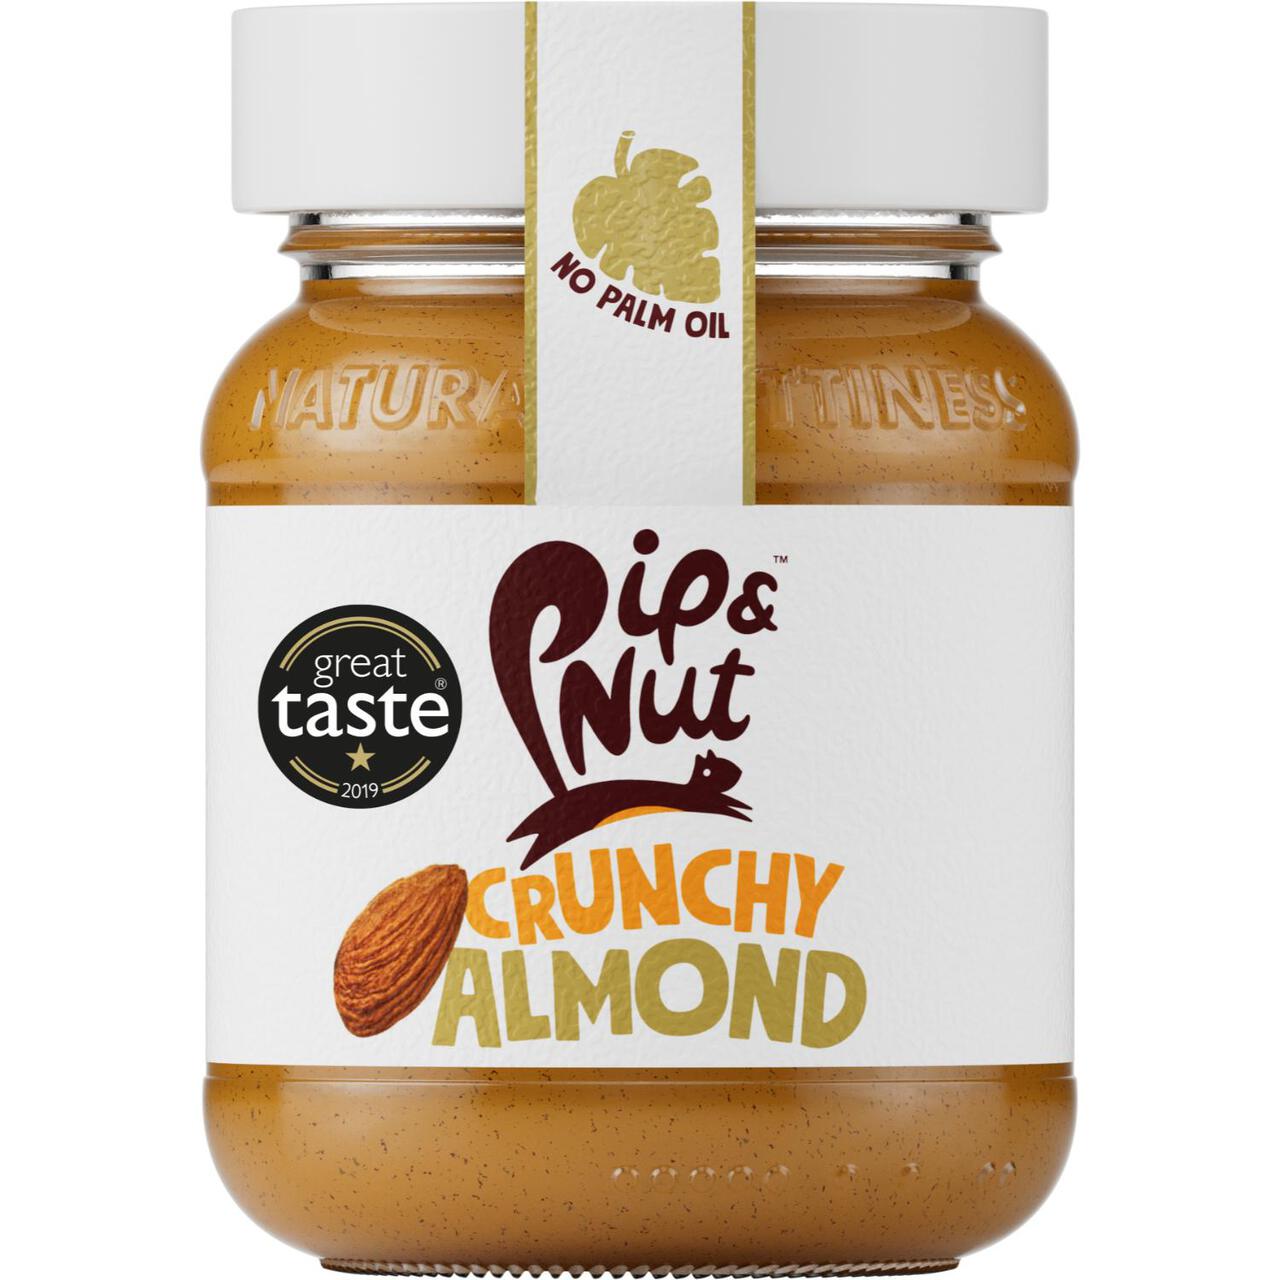 Pip & Nut Crunchy Almond Butter 170g